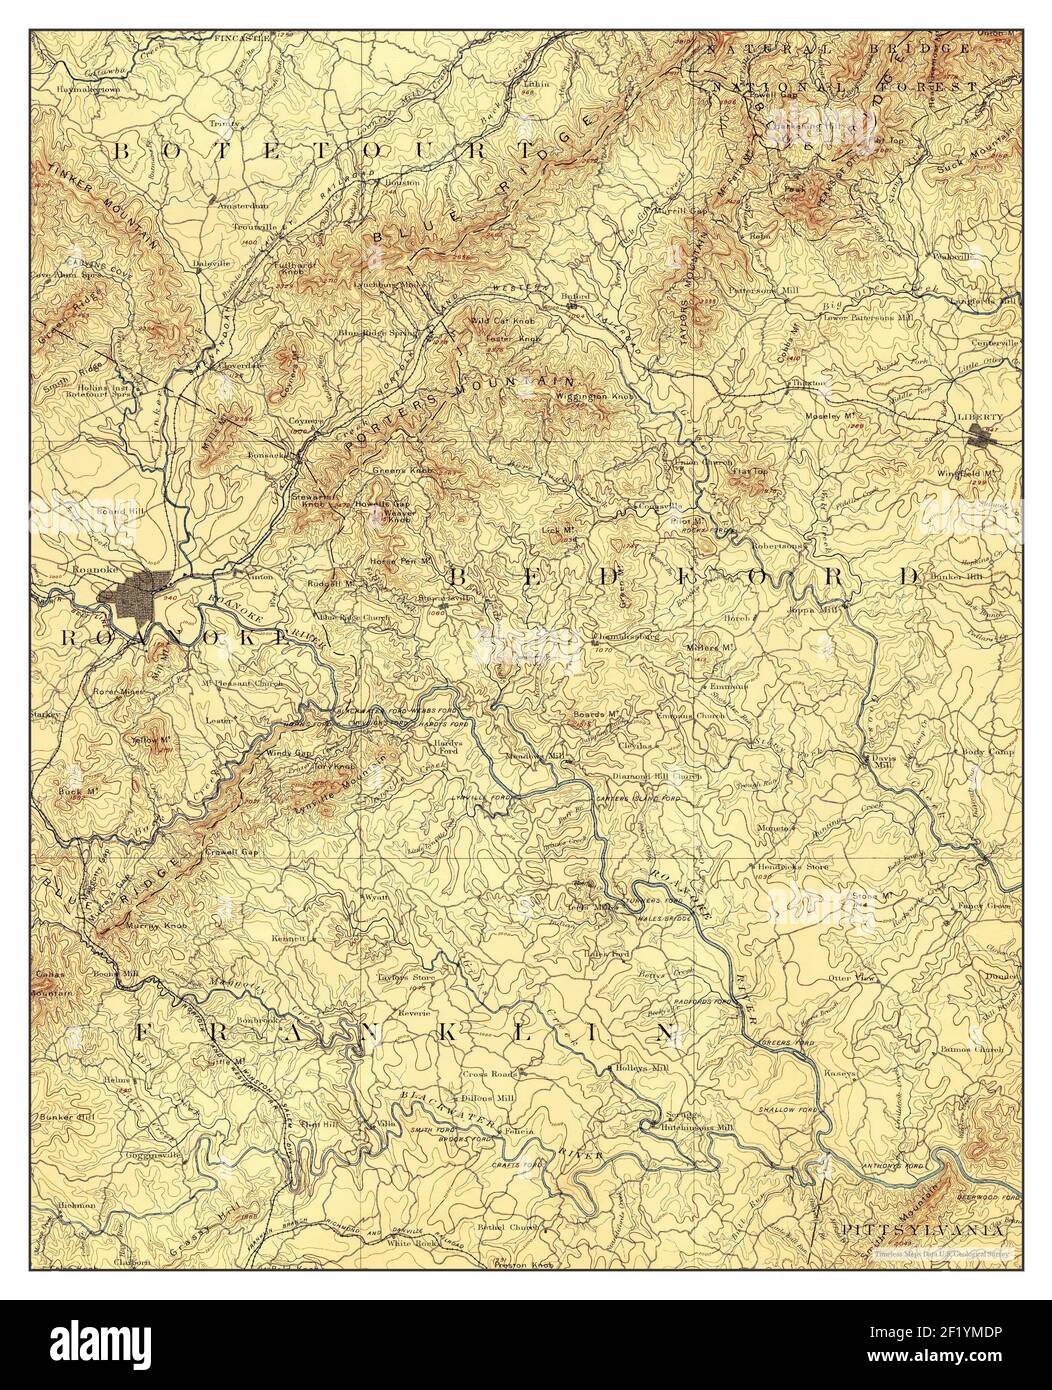 Roanoke, Virginie, carte 1891, 1:125000, États-Unis d'Amérique par Timeless Maps, données U.S. Geological Survey Banque D'Images